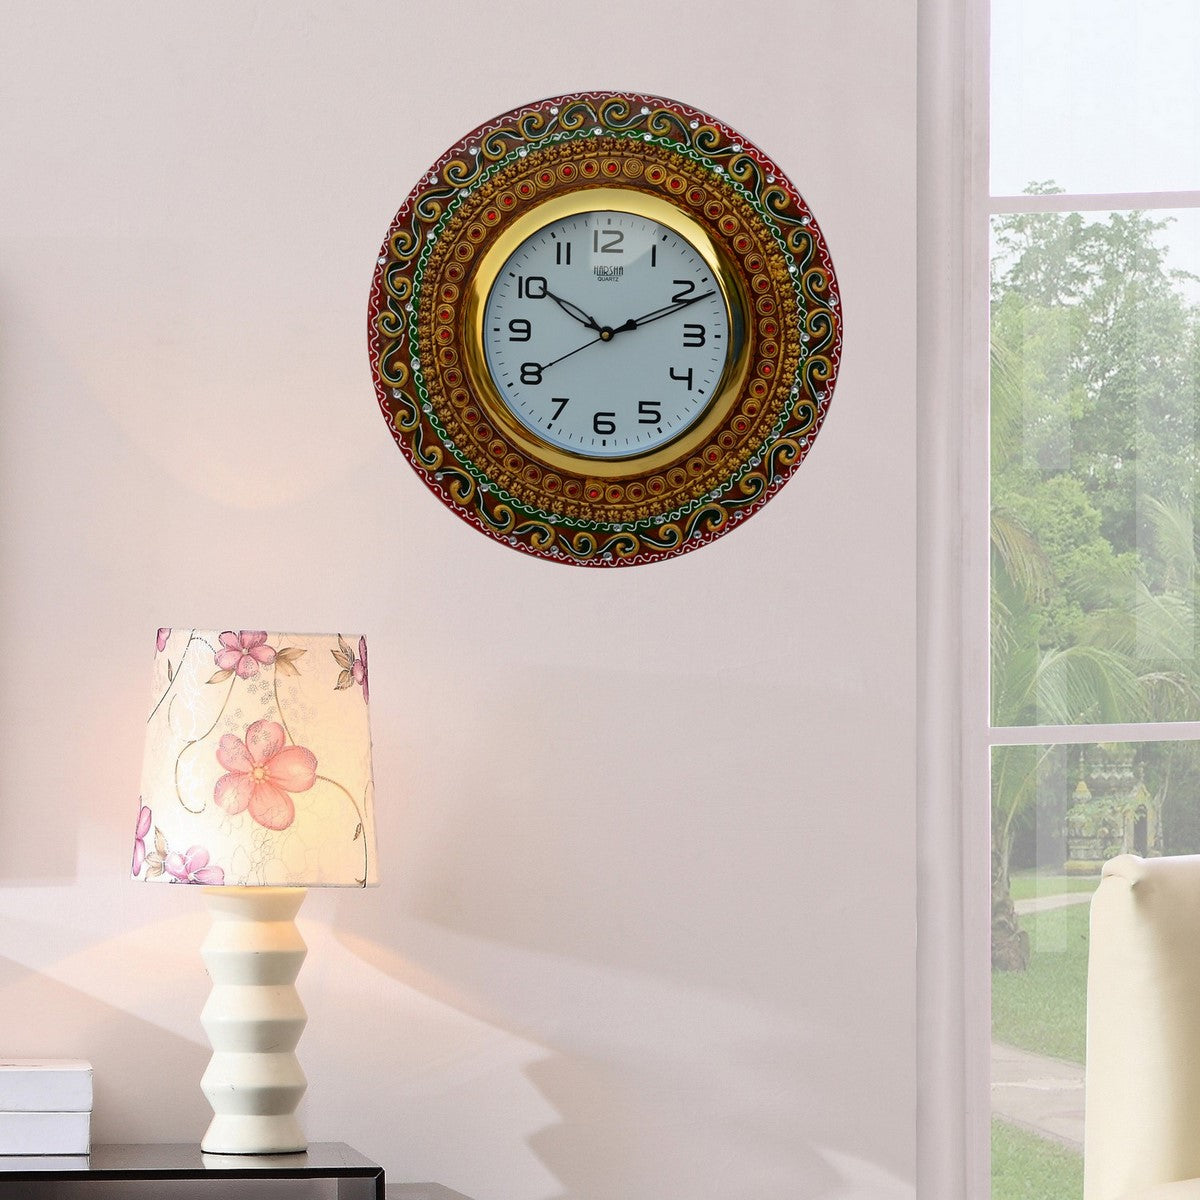 Papier-Mache Kundan Studded Handcrafted Wall Clock 2